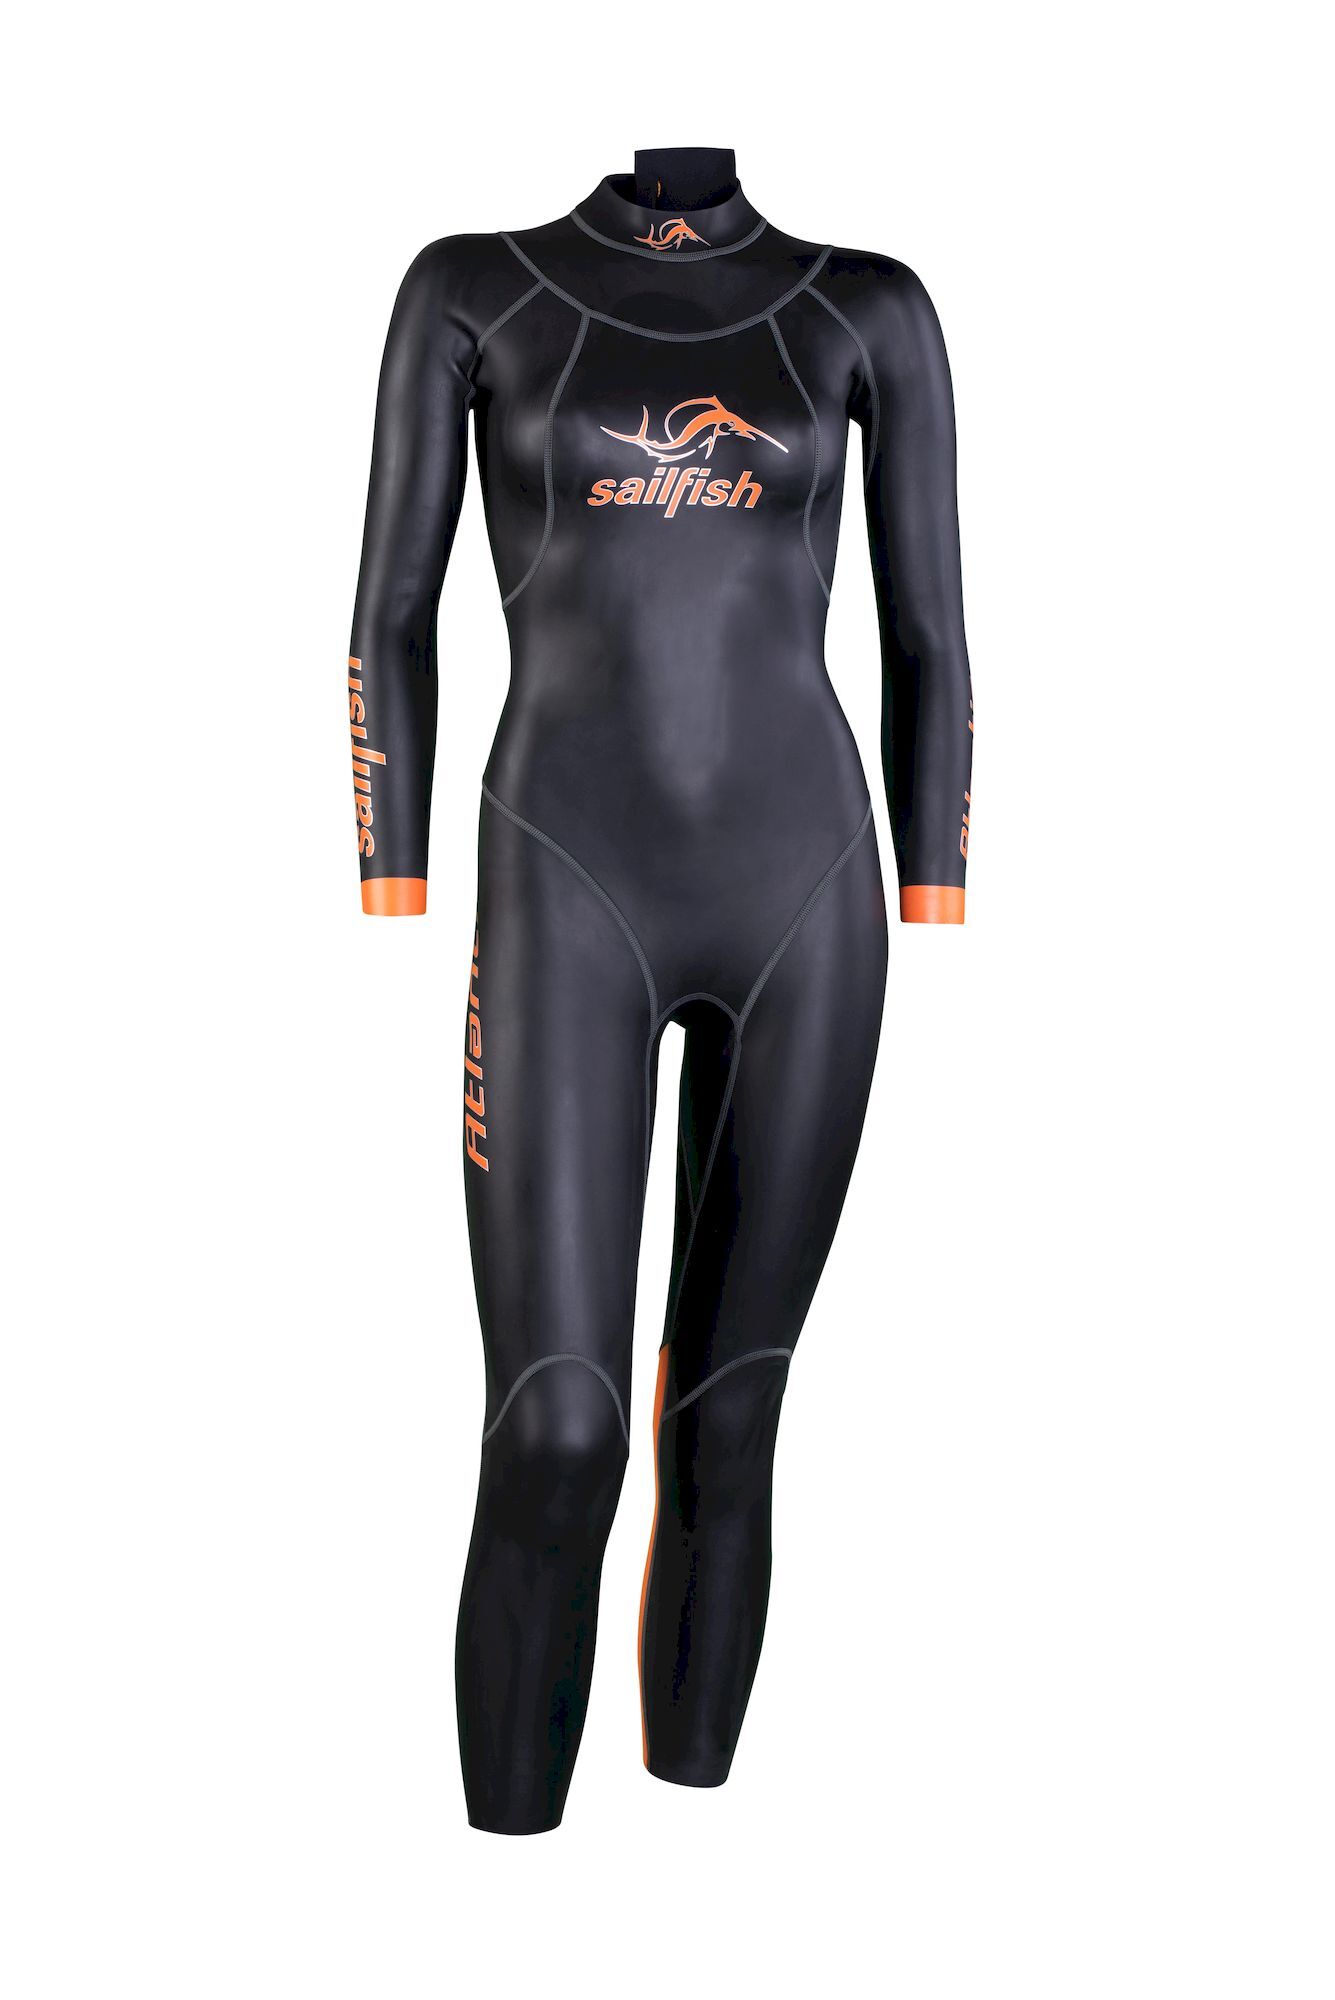 Sailfish Womens Atlantic 2 - Neoprene wetsuit - Women's